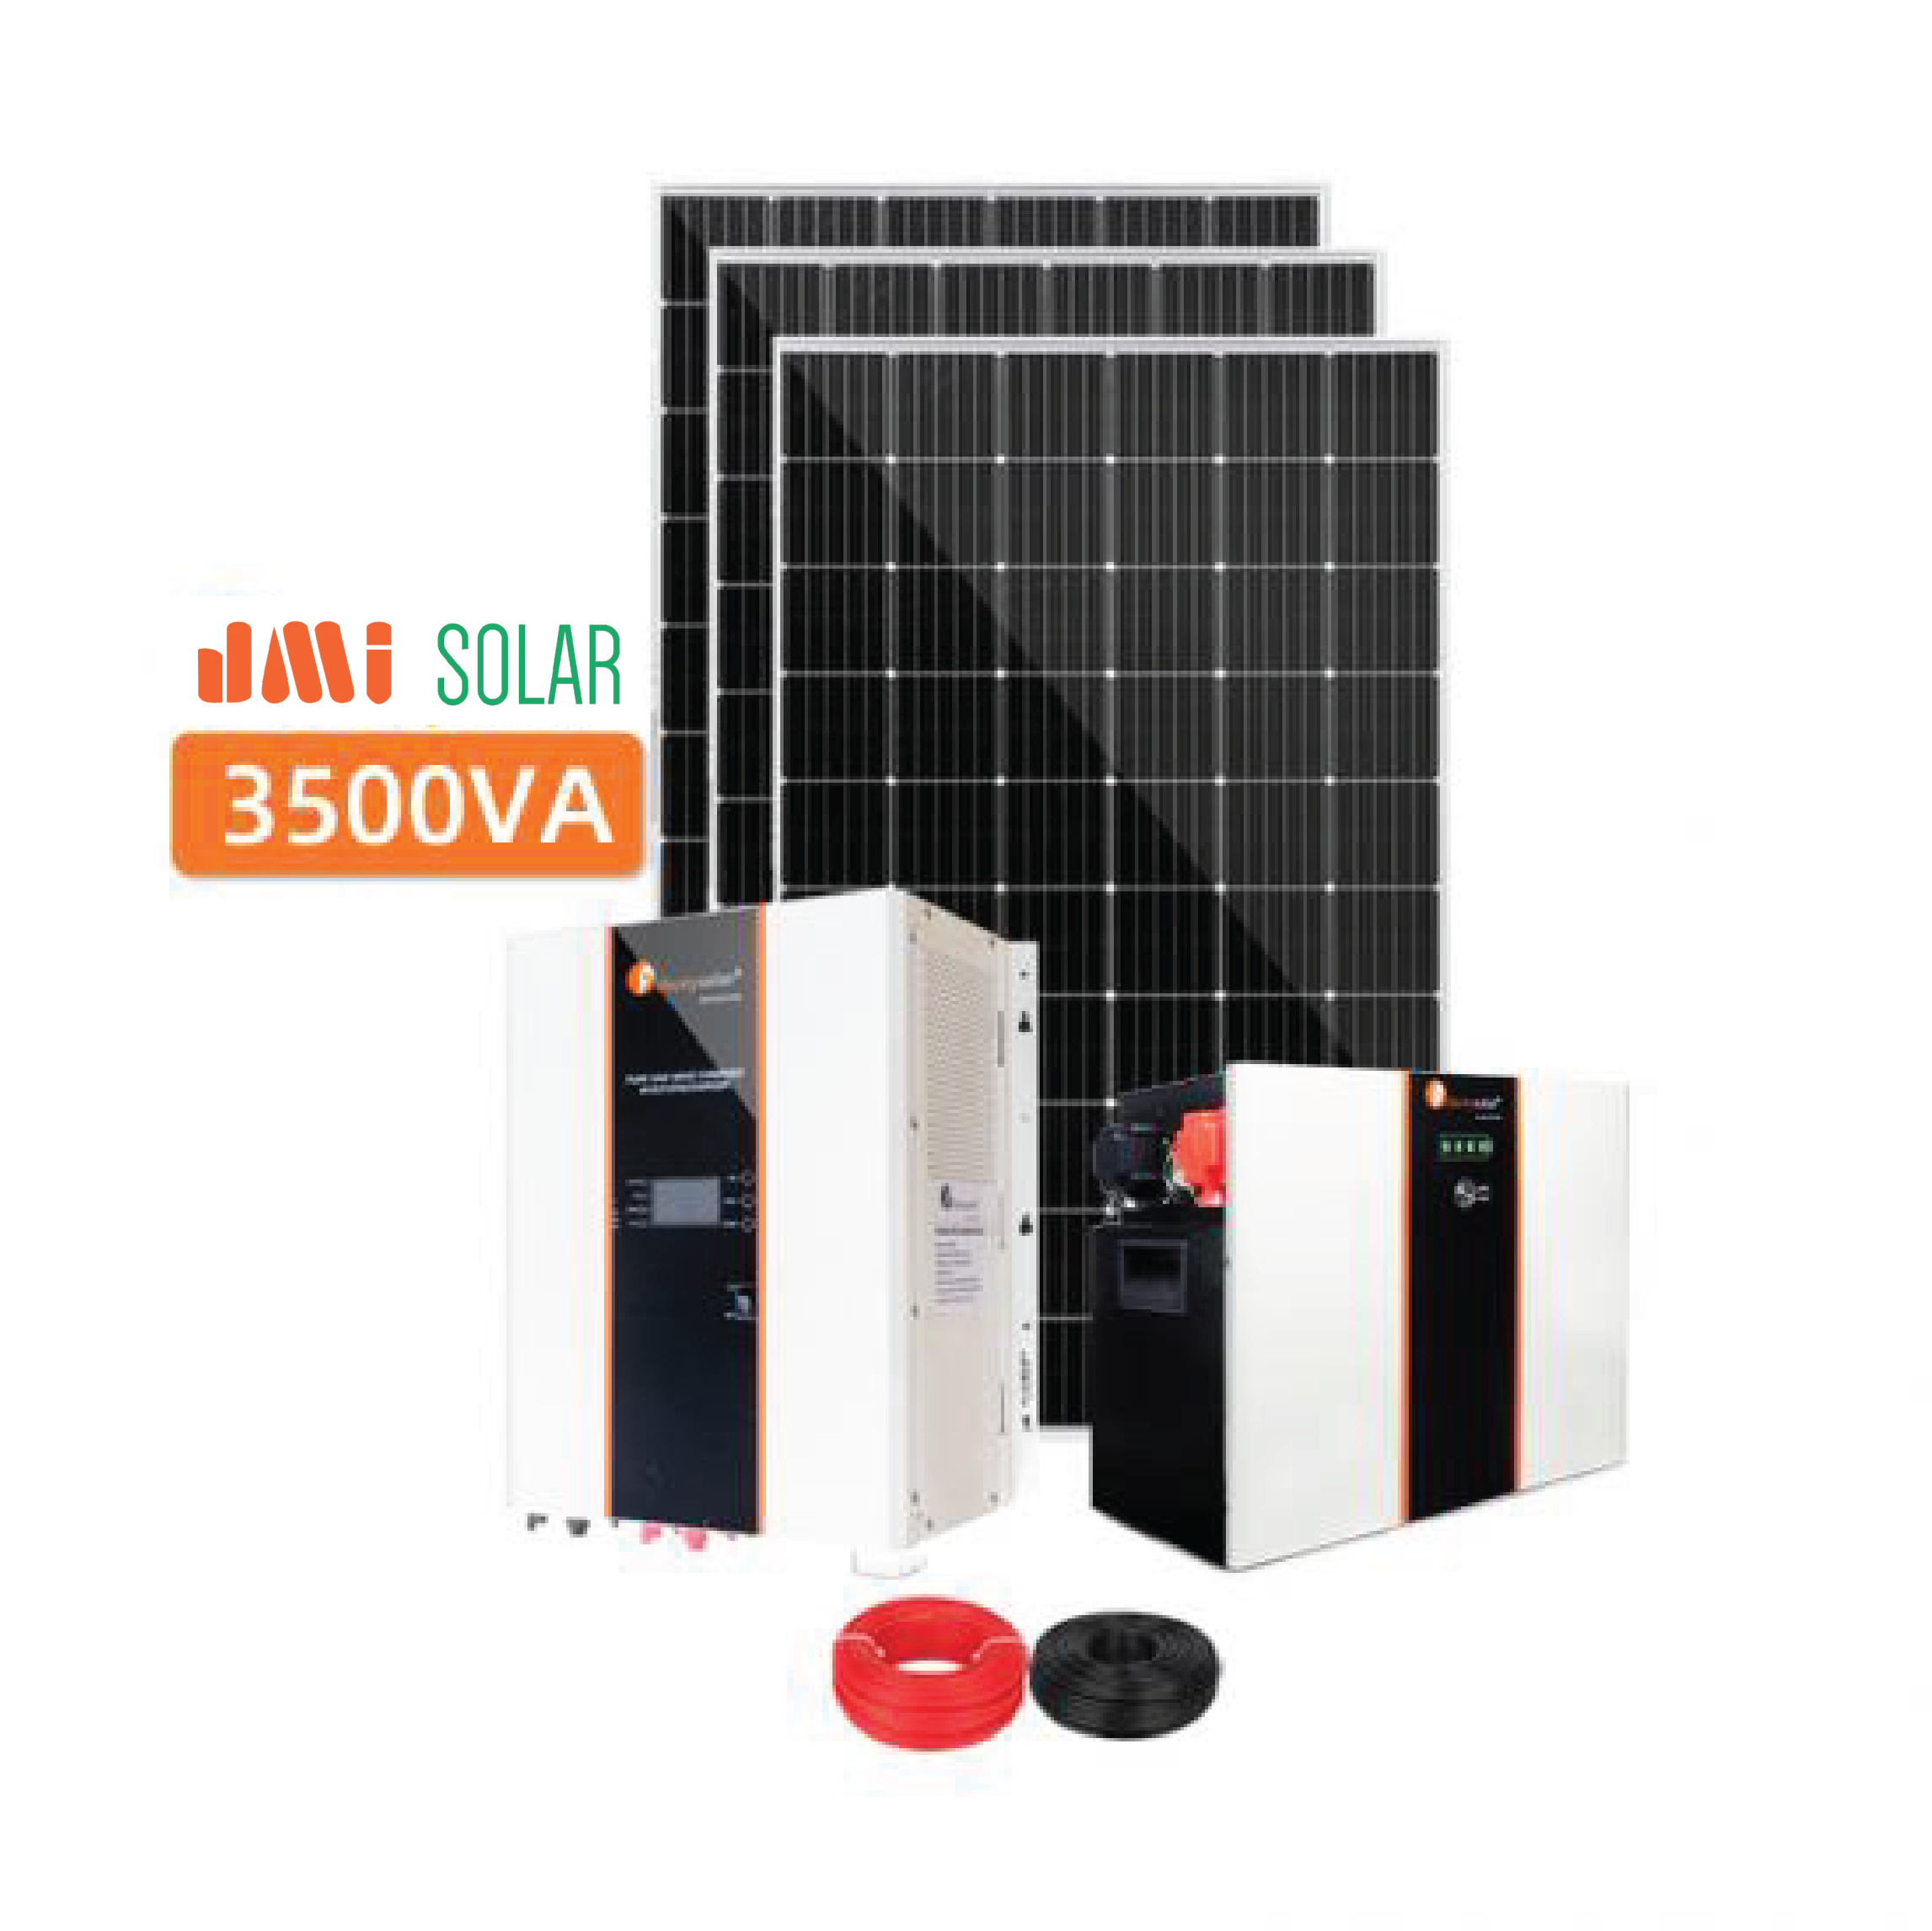 3500VA 24V Renewable Solar Power Energy System For Home Battery Storage